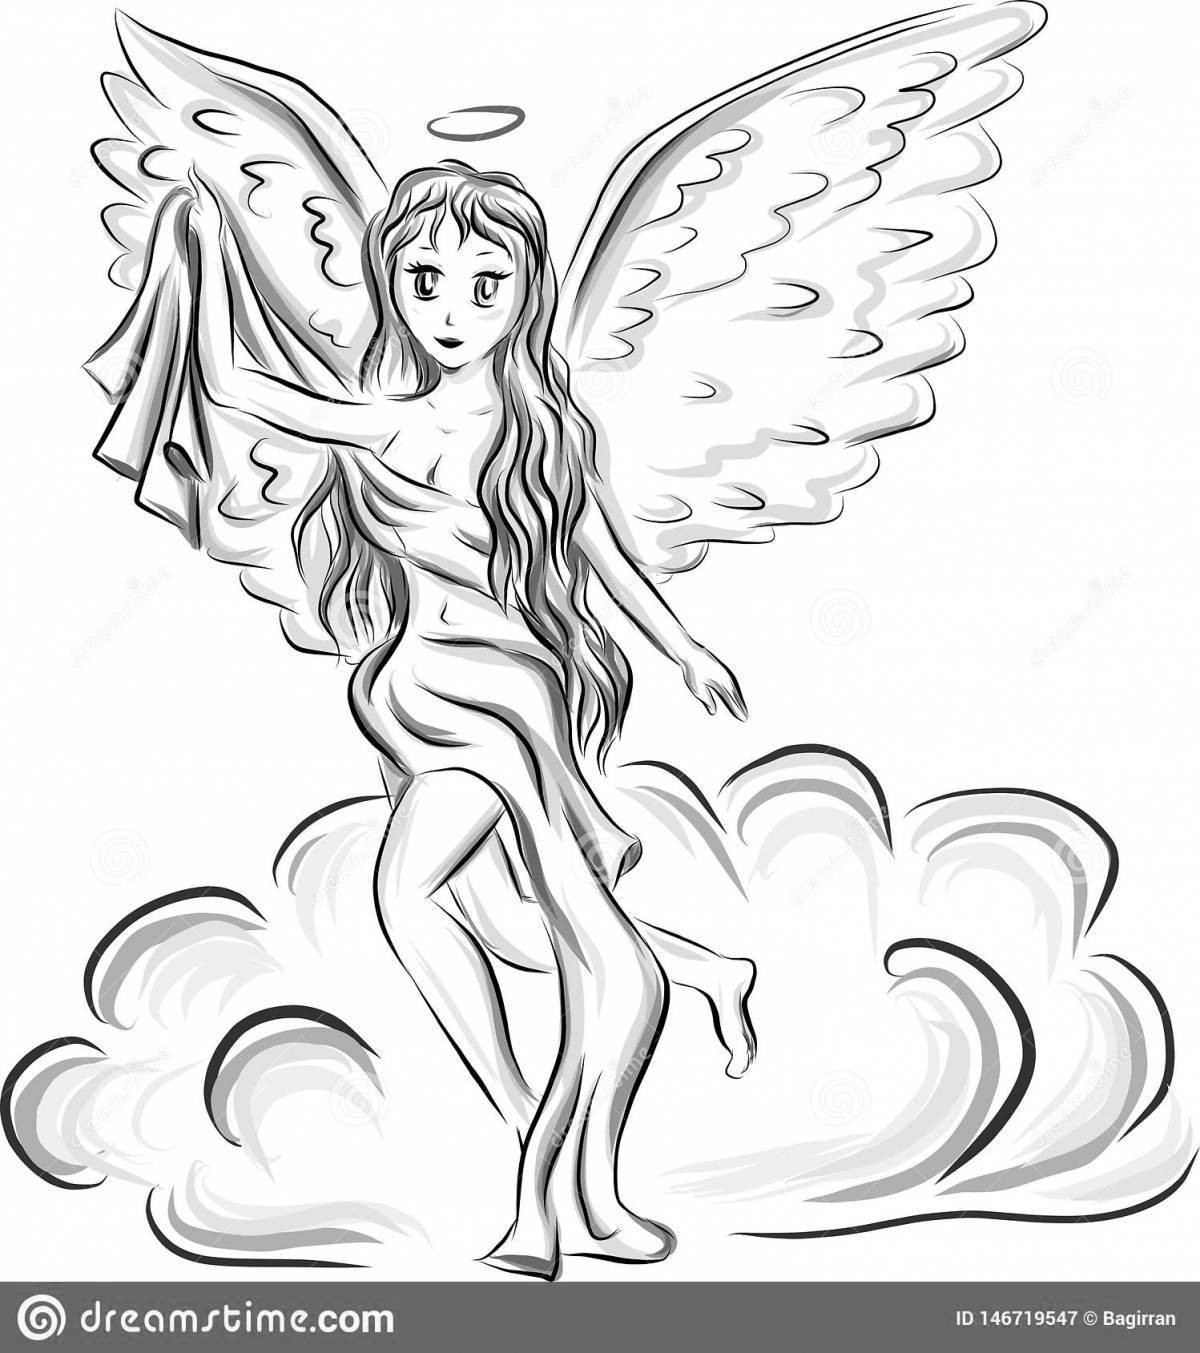 Божественная раскраска девушка с крыльями